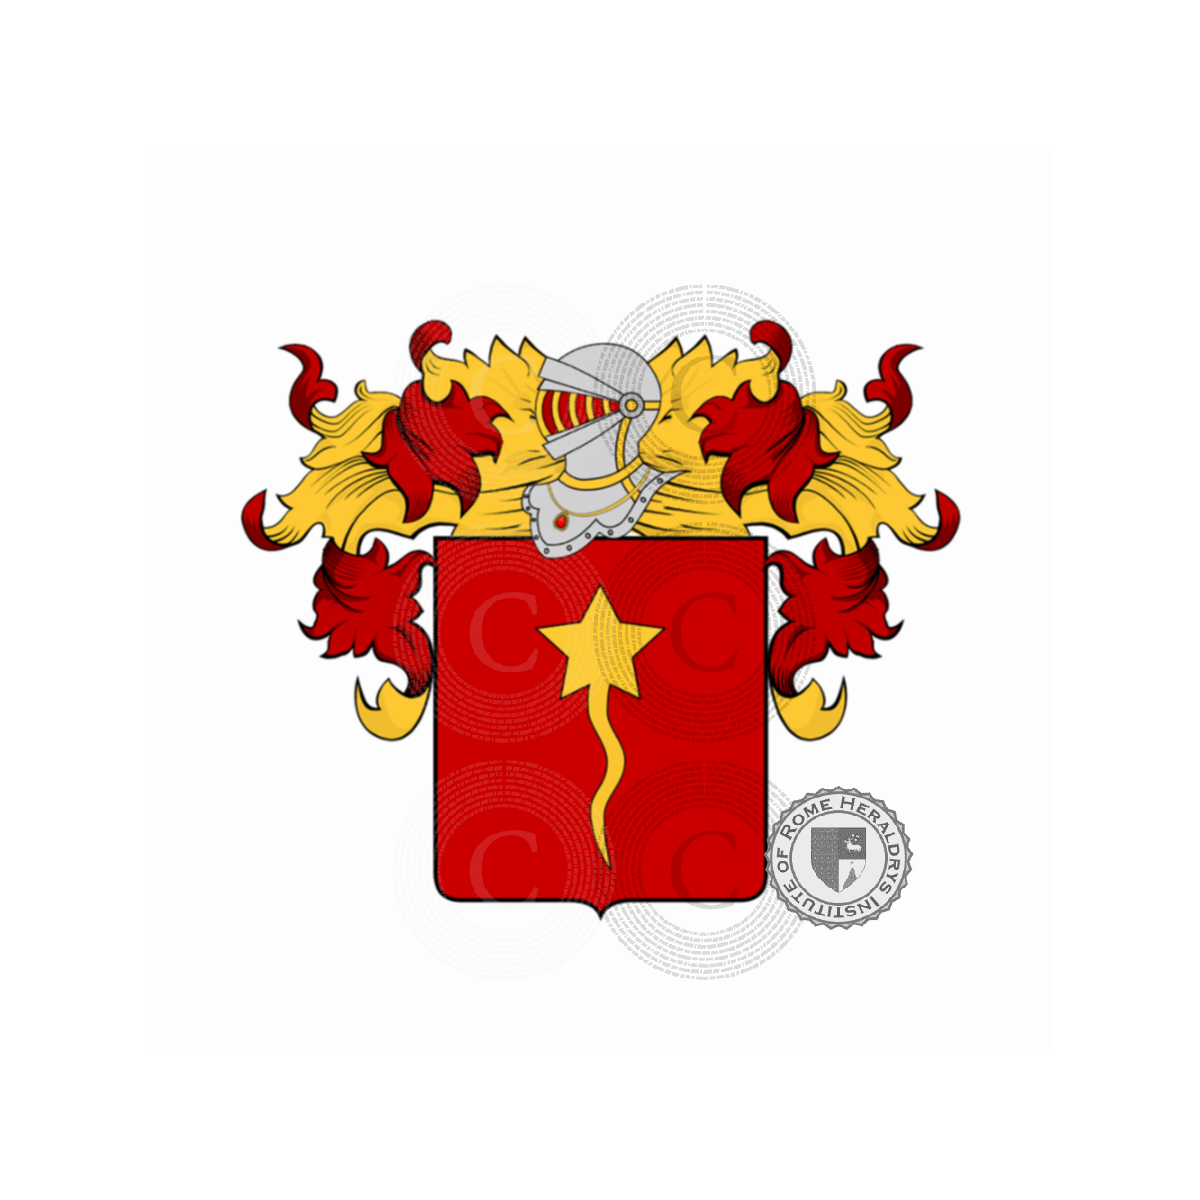 Wappen der FamilieRossi, de Rossi,de Rubeis,Rosso,Russo